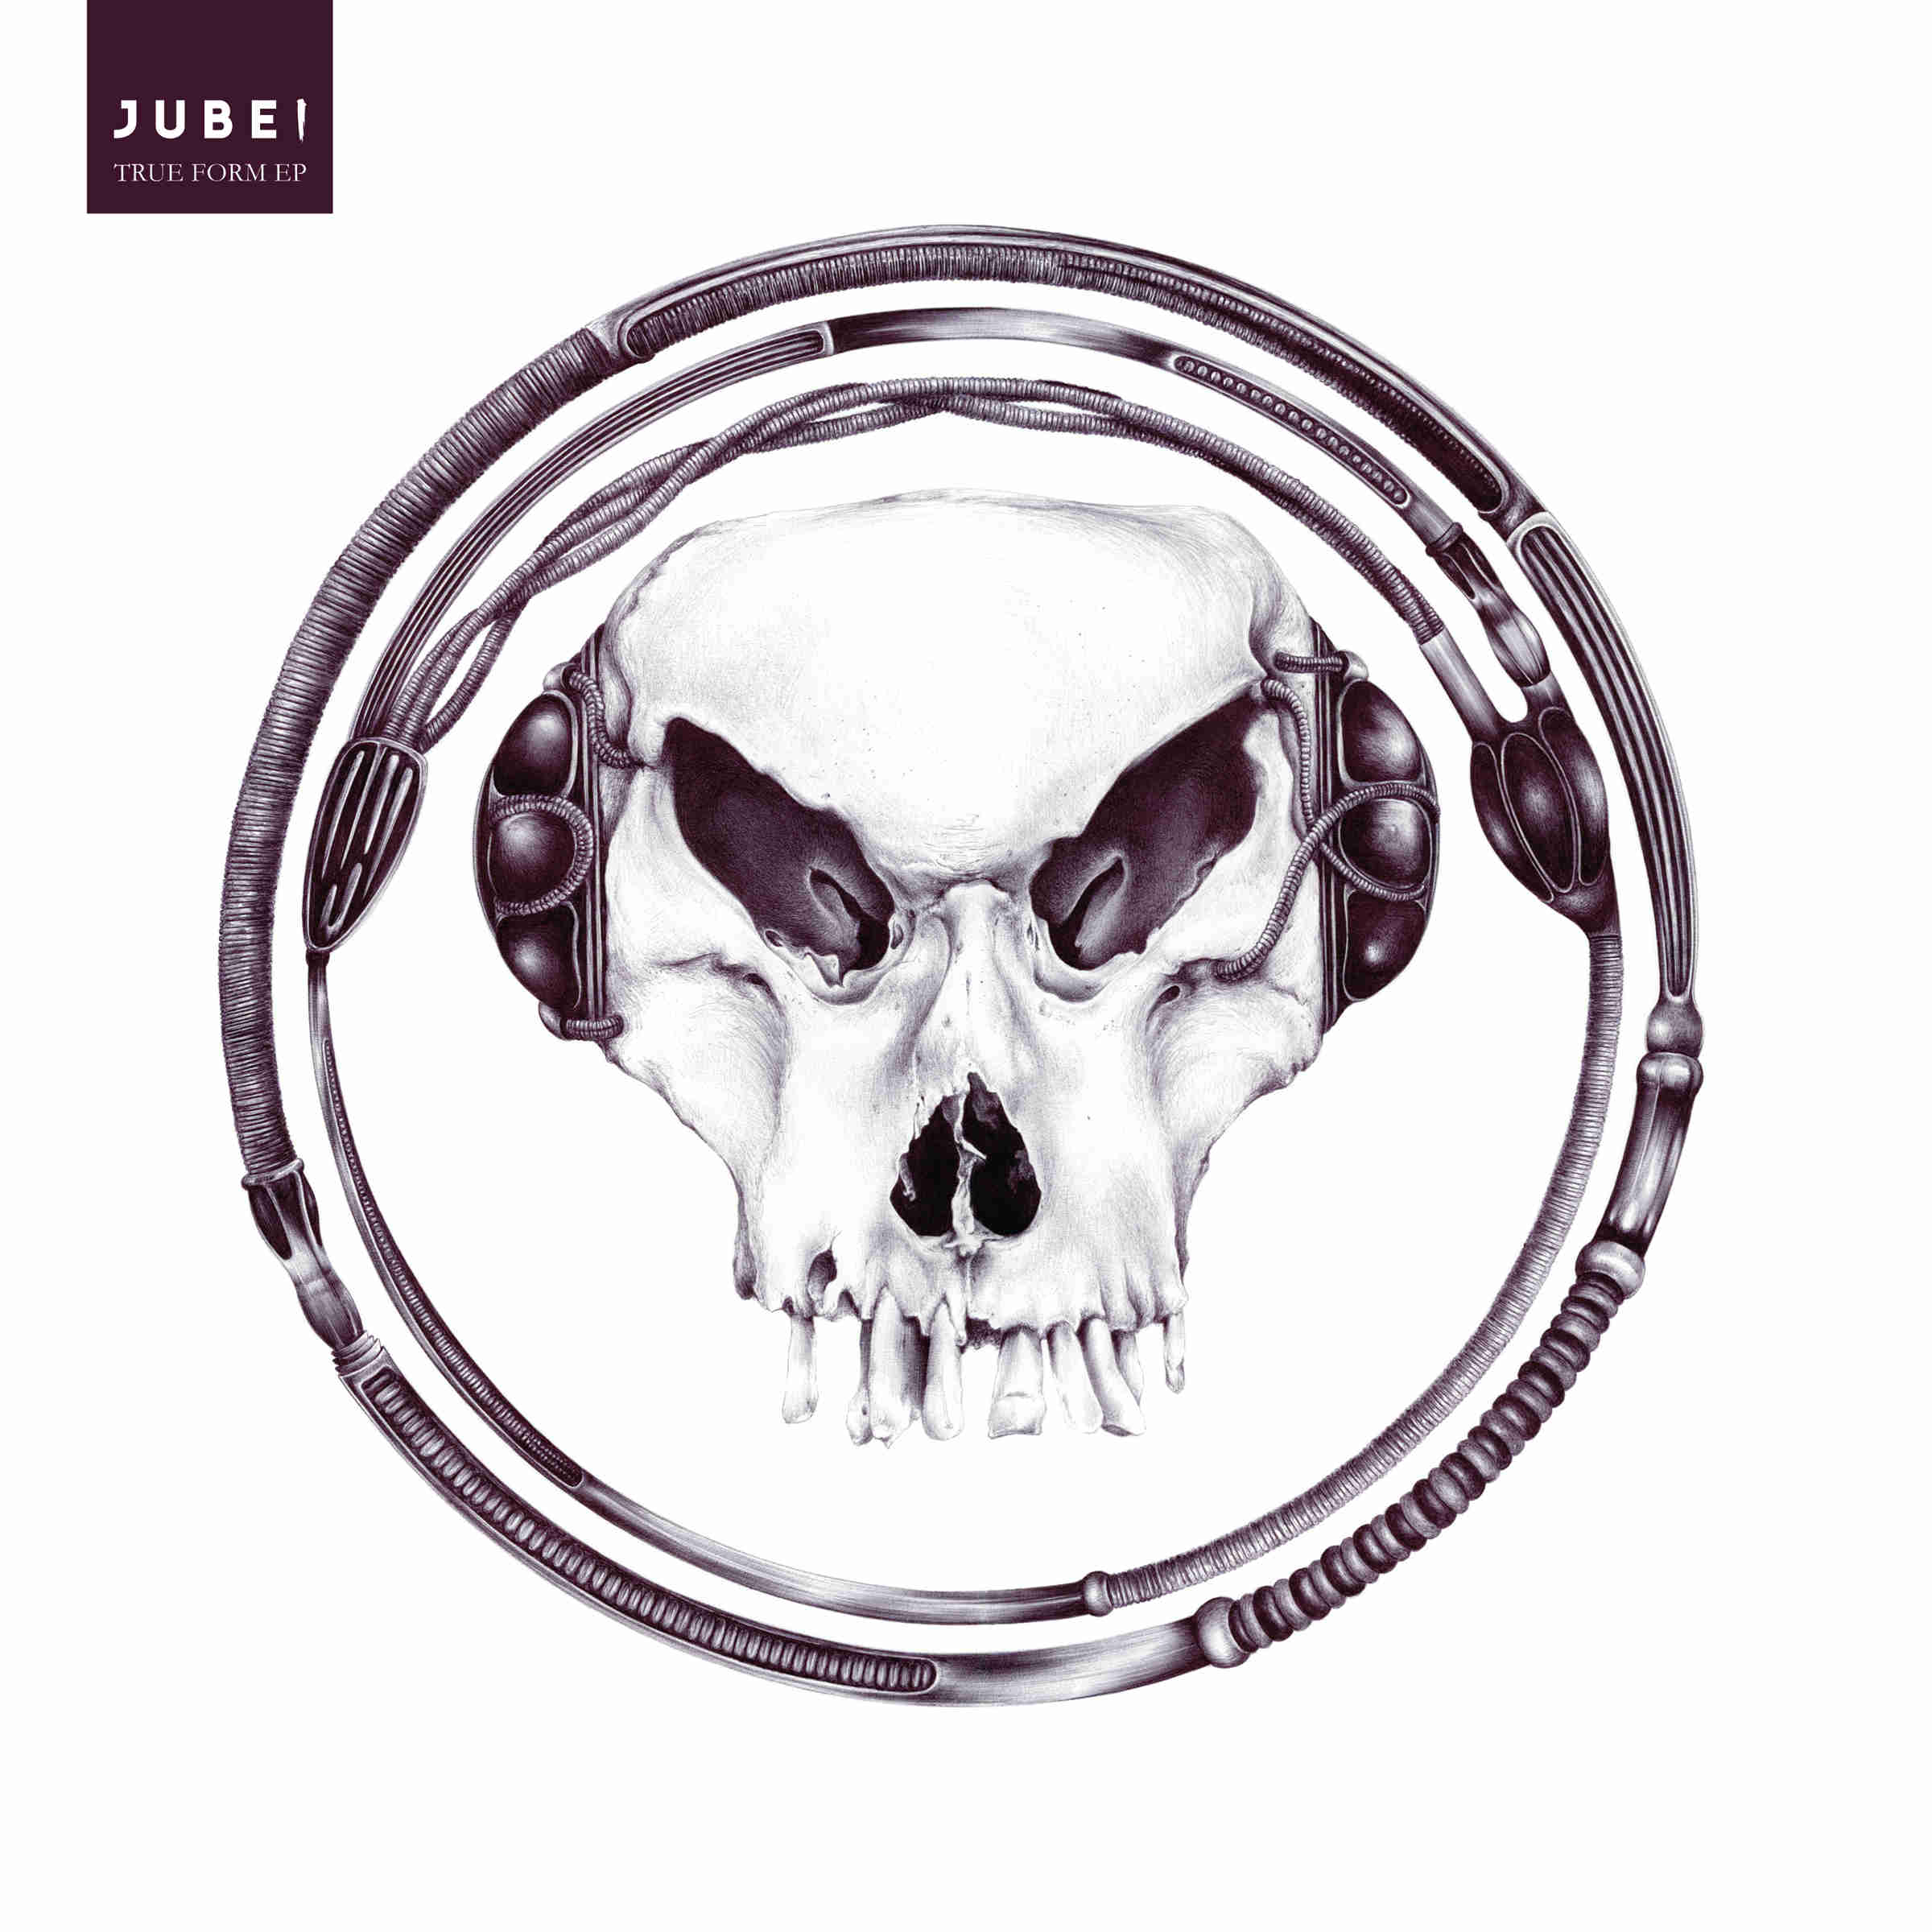 Jubei/TRUE FORM EP 12"